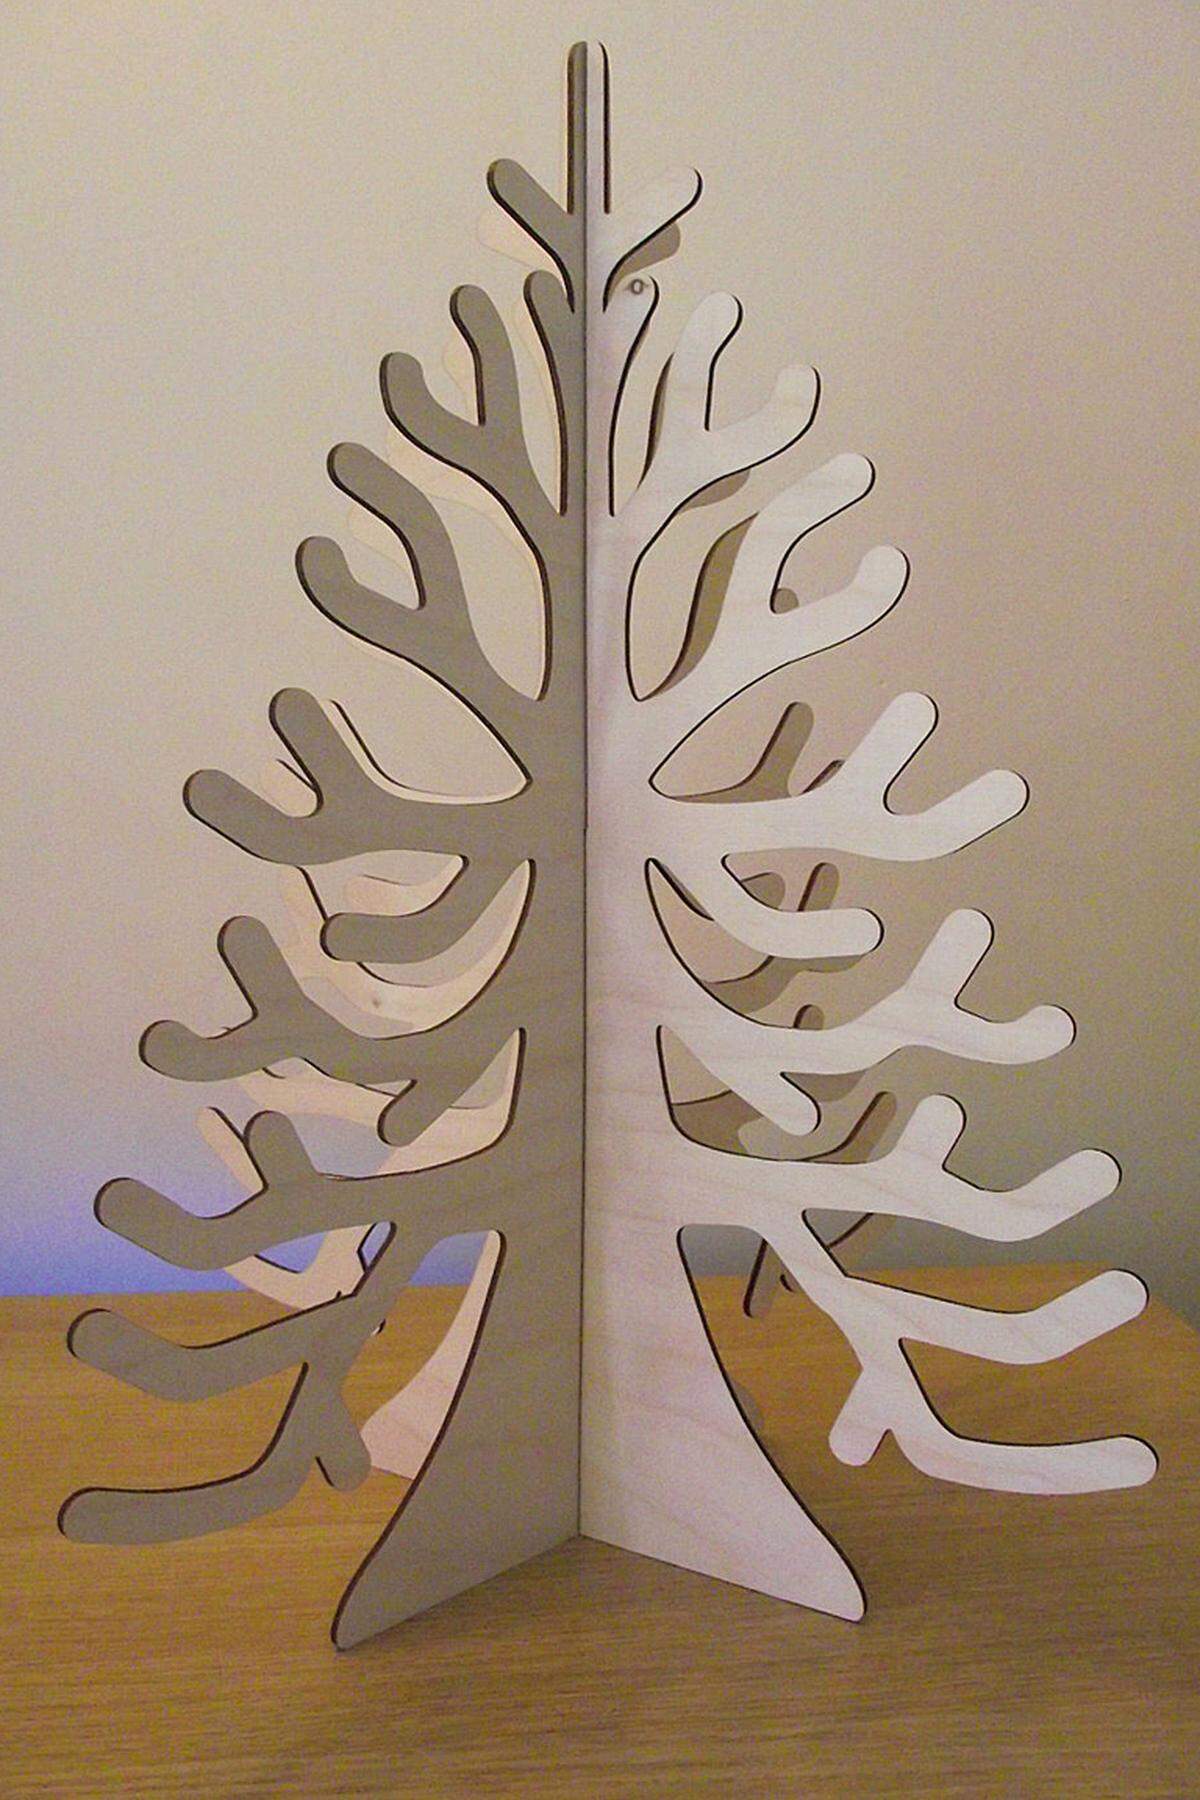 Weniger auffällig, dafür in 3D, präsentiert sich dieser alternative Weihnachtsbaum: Preis: 29,99 US-Dollar, gesehen bei Etsy.